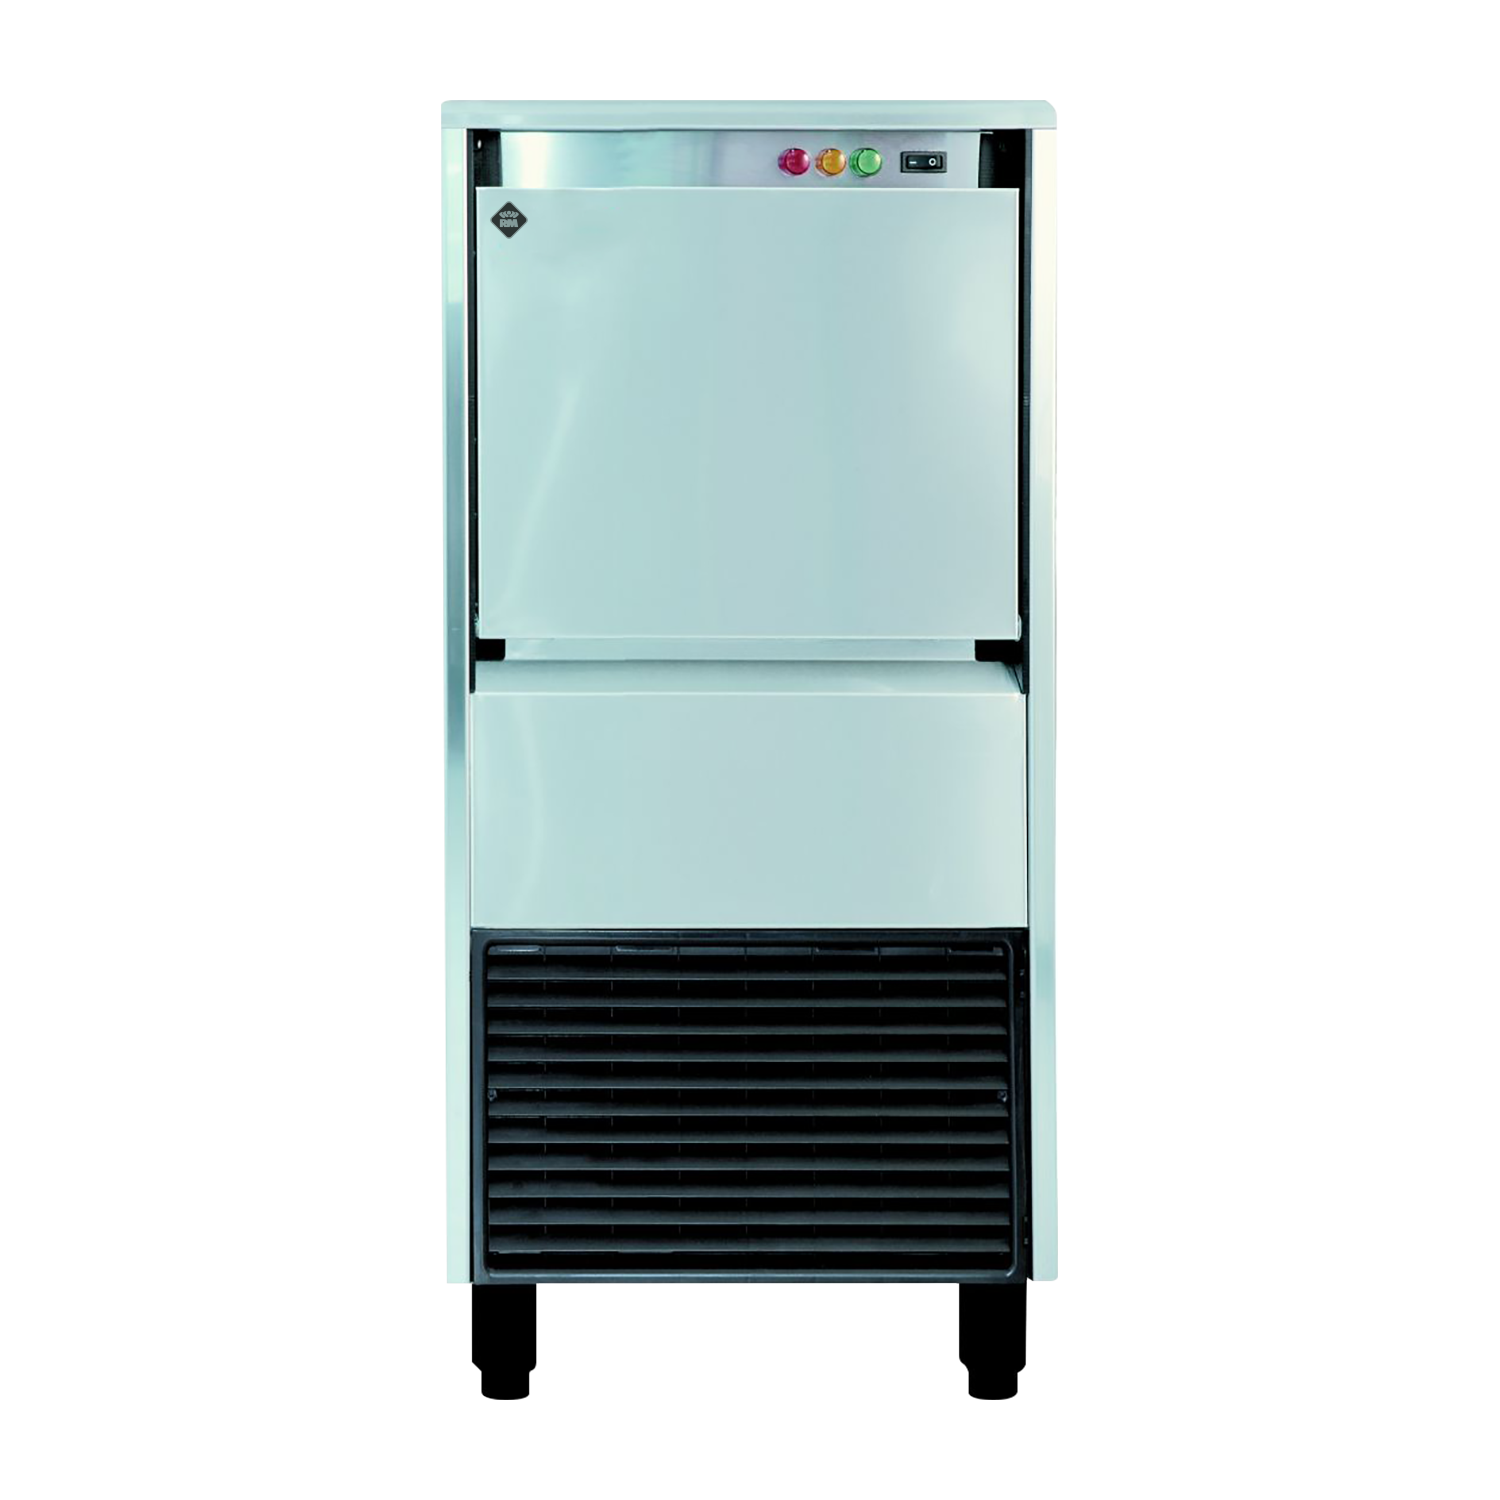 IMD 5820 W - Výrobník ledové drtě chl. vodou 58 kg/24h